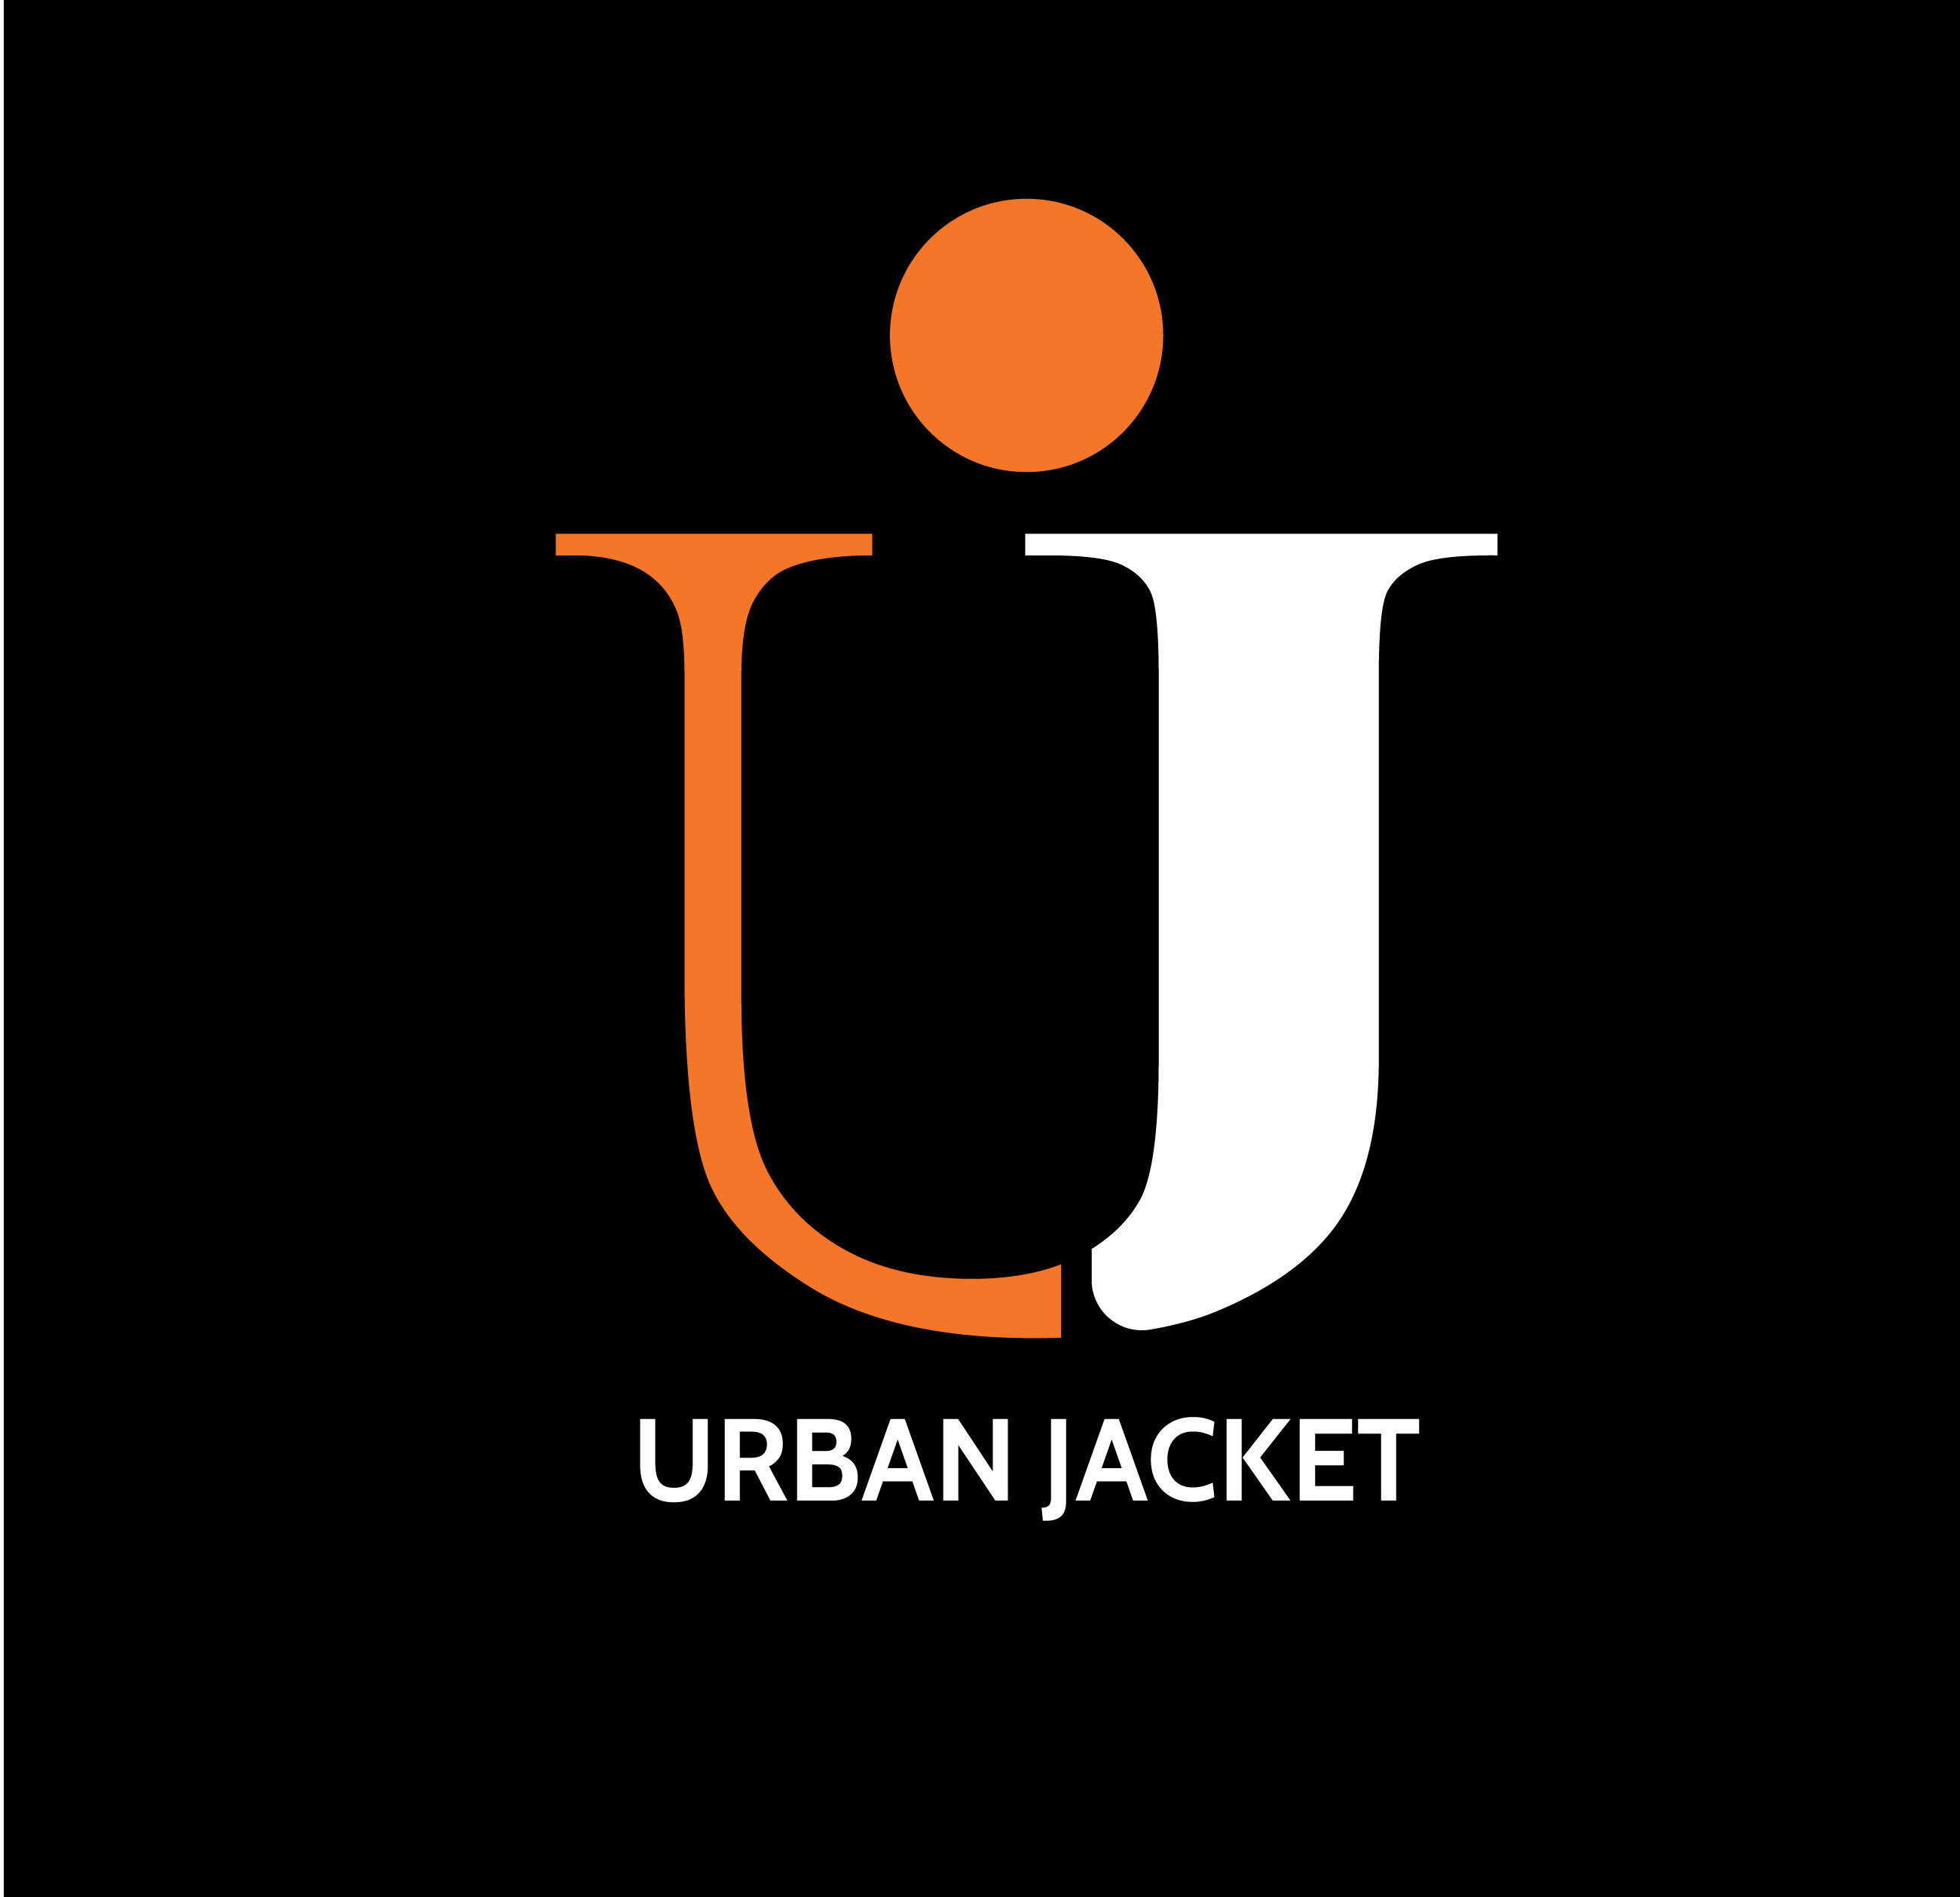 Company logo of Urban Jacket